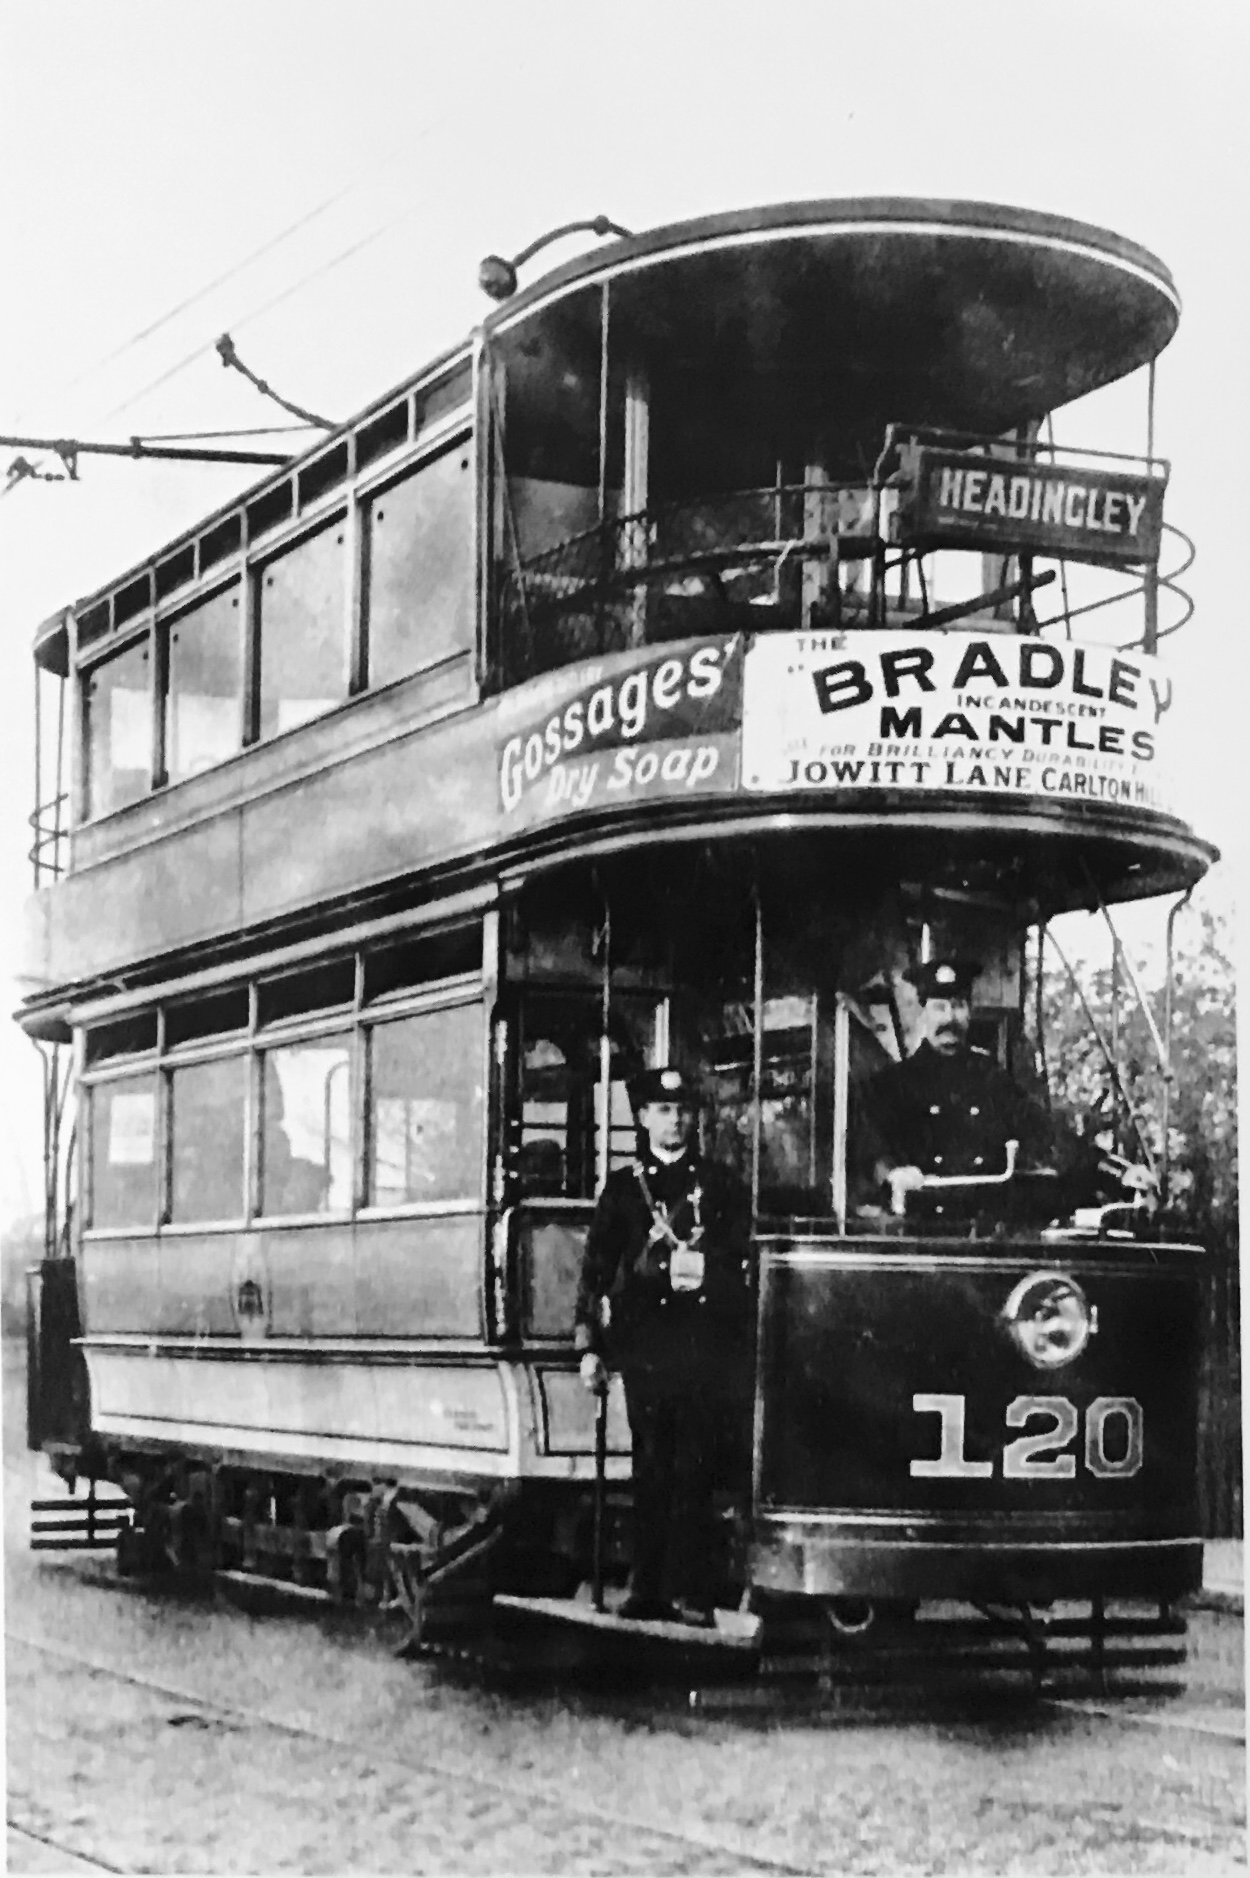 Tram No 120, destination Headingley, c1910